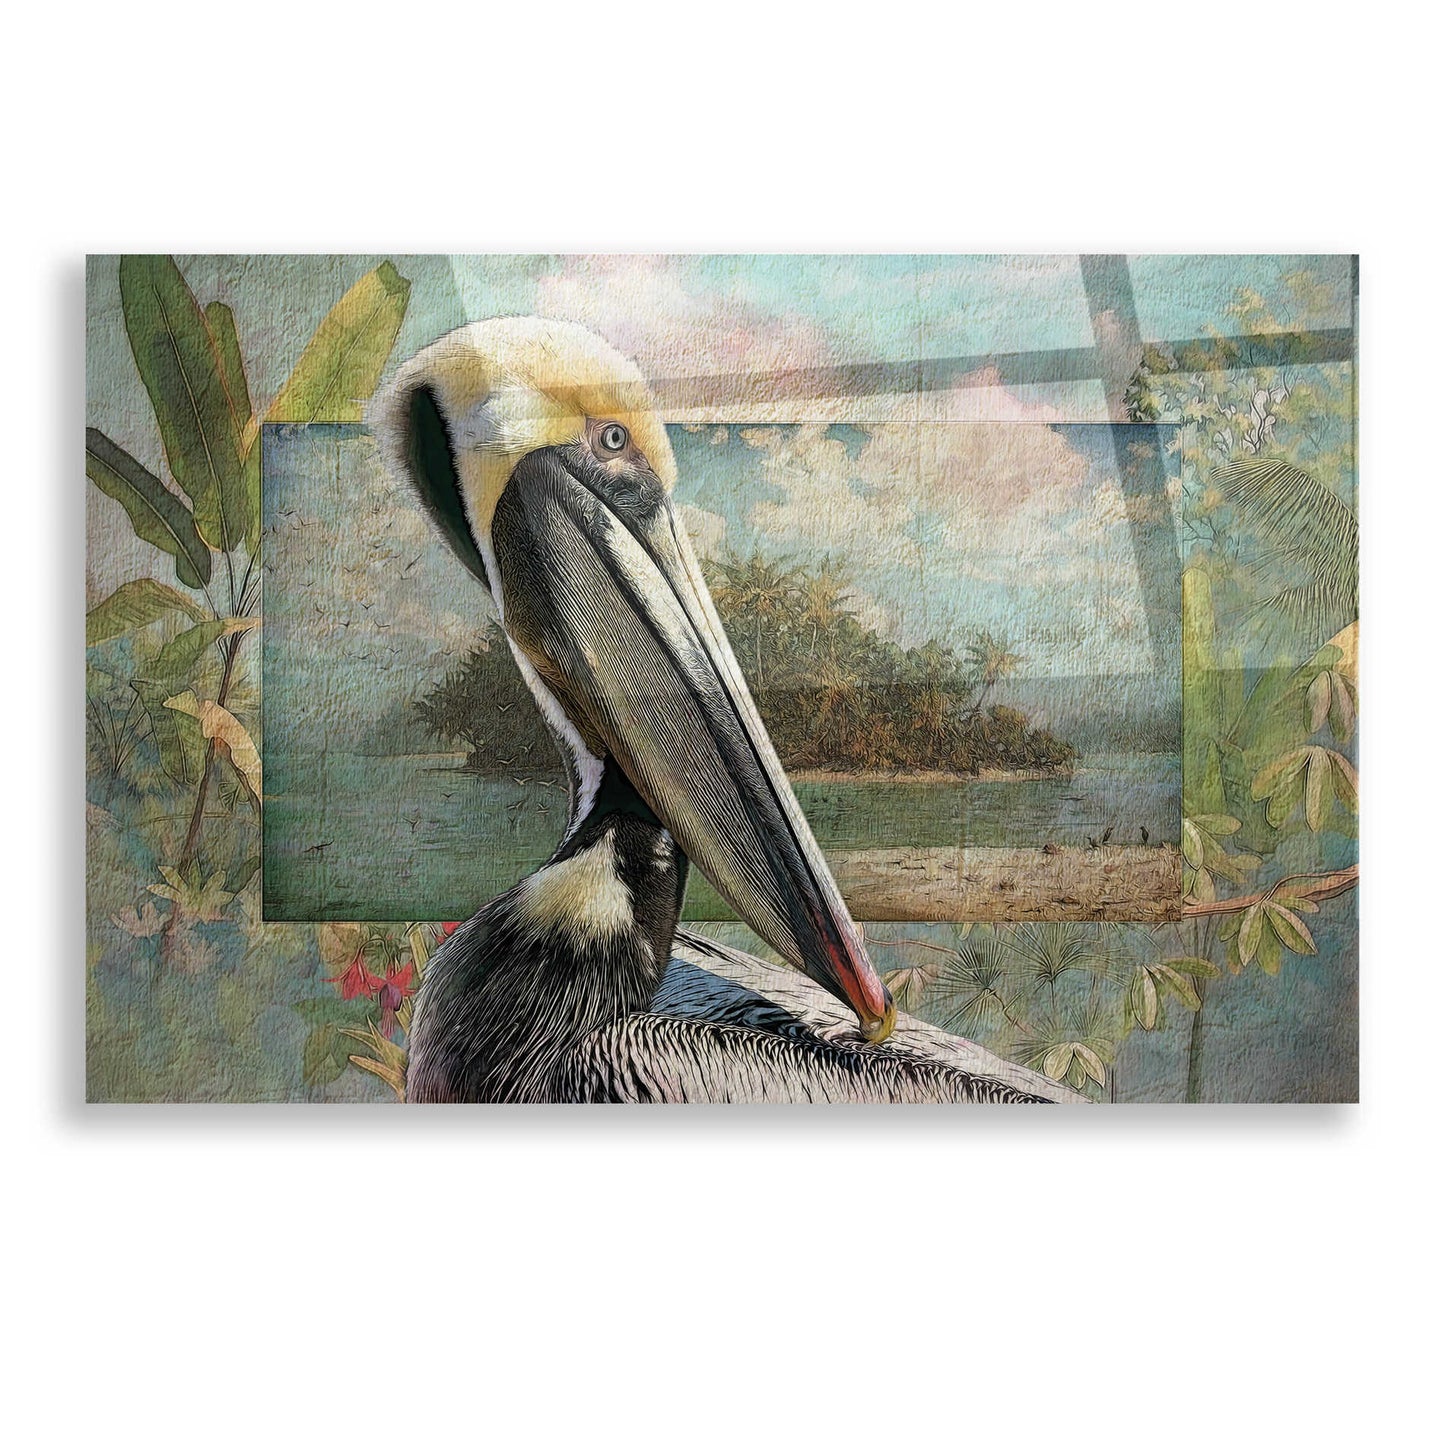 Epic Art 'Pelican Paradise II' by Steve Hunziker, Acrylic Glass Wall Art,16x12